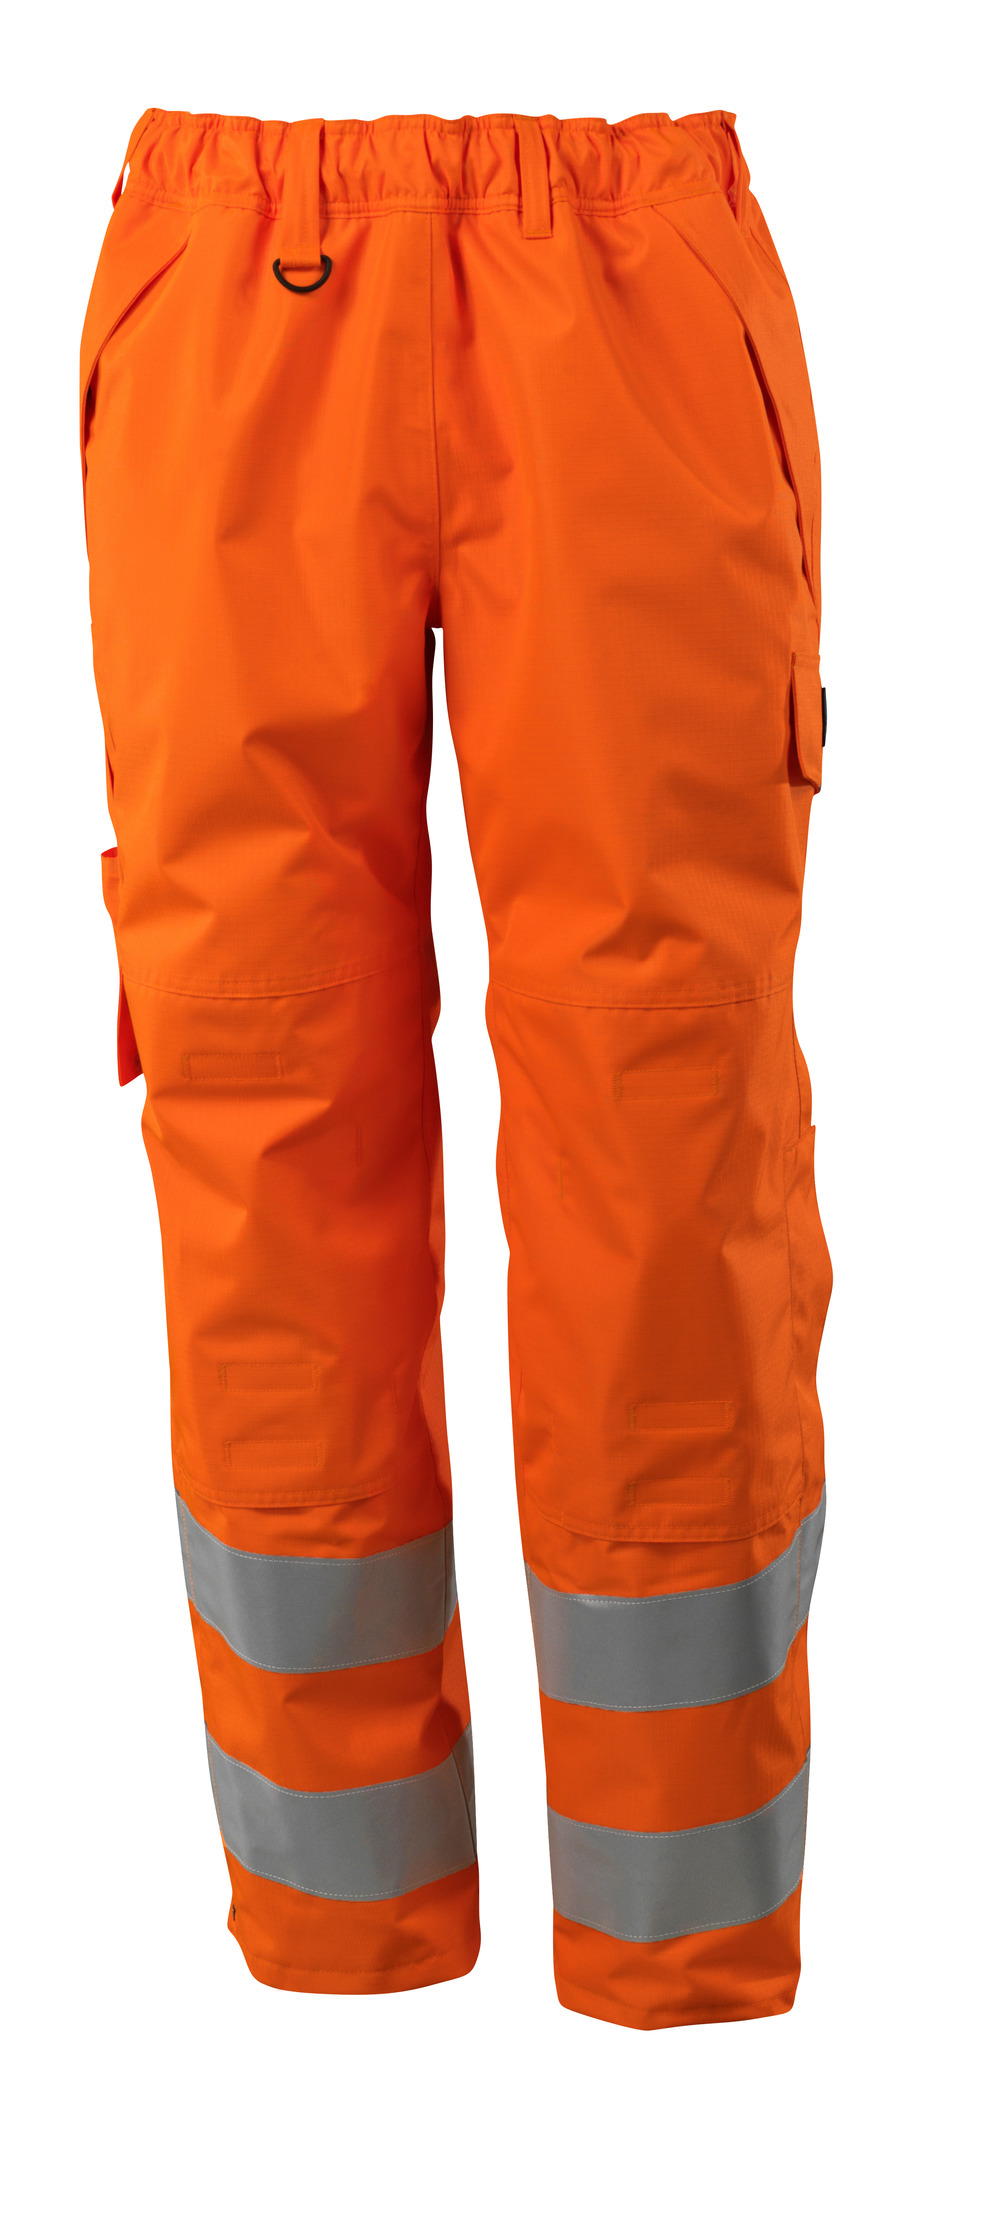 MASCOT-Warnschutz, Warn-Überziehhose, 210 g/m², orange

